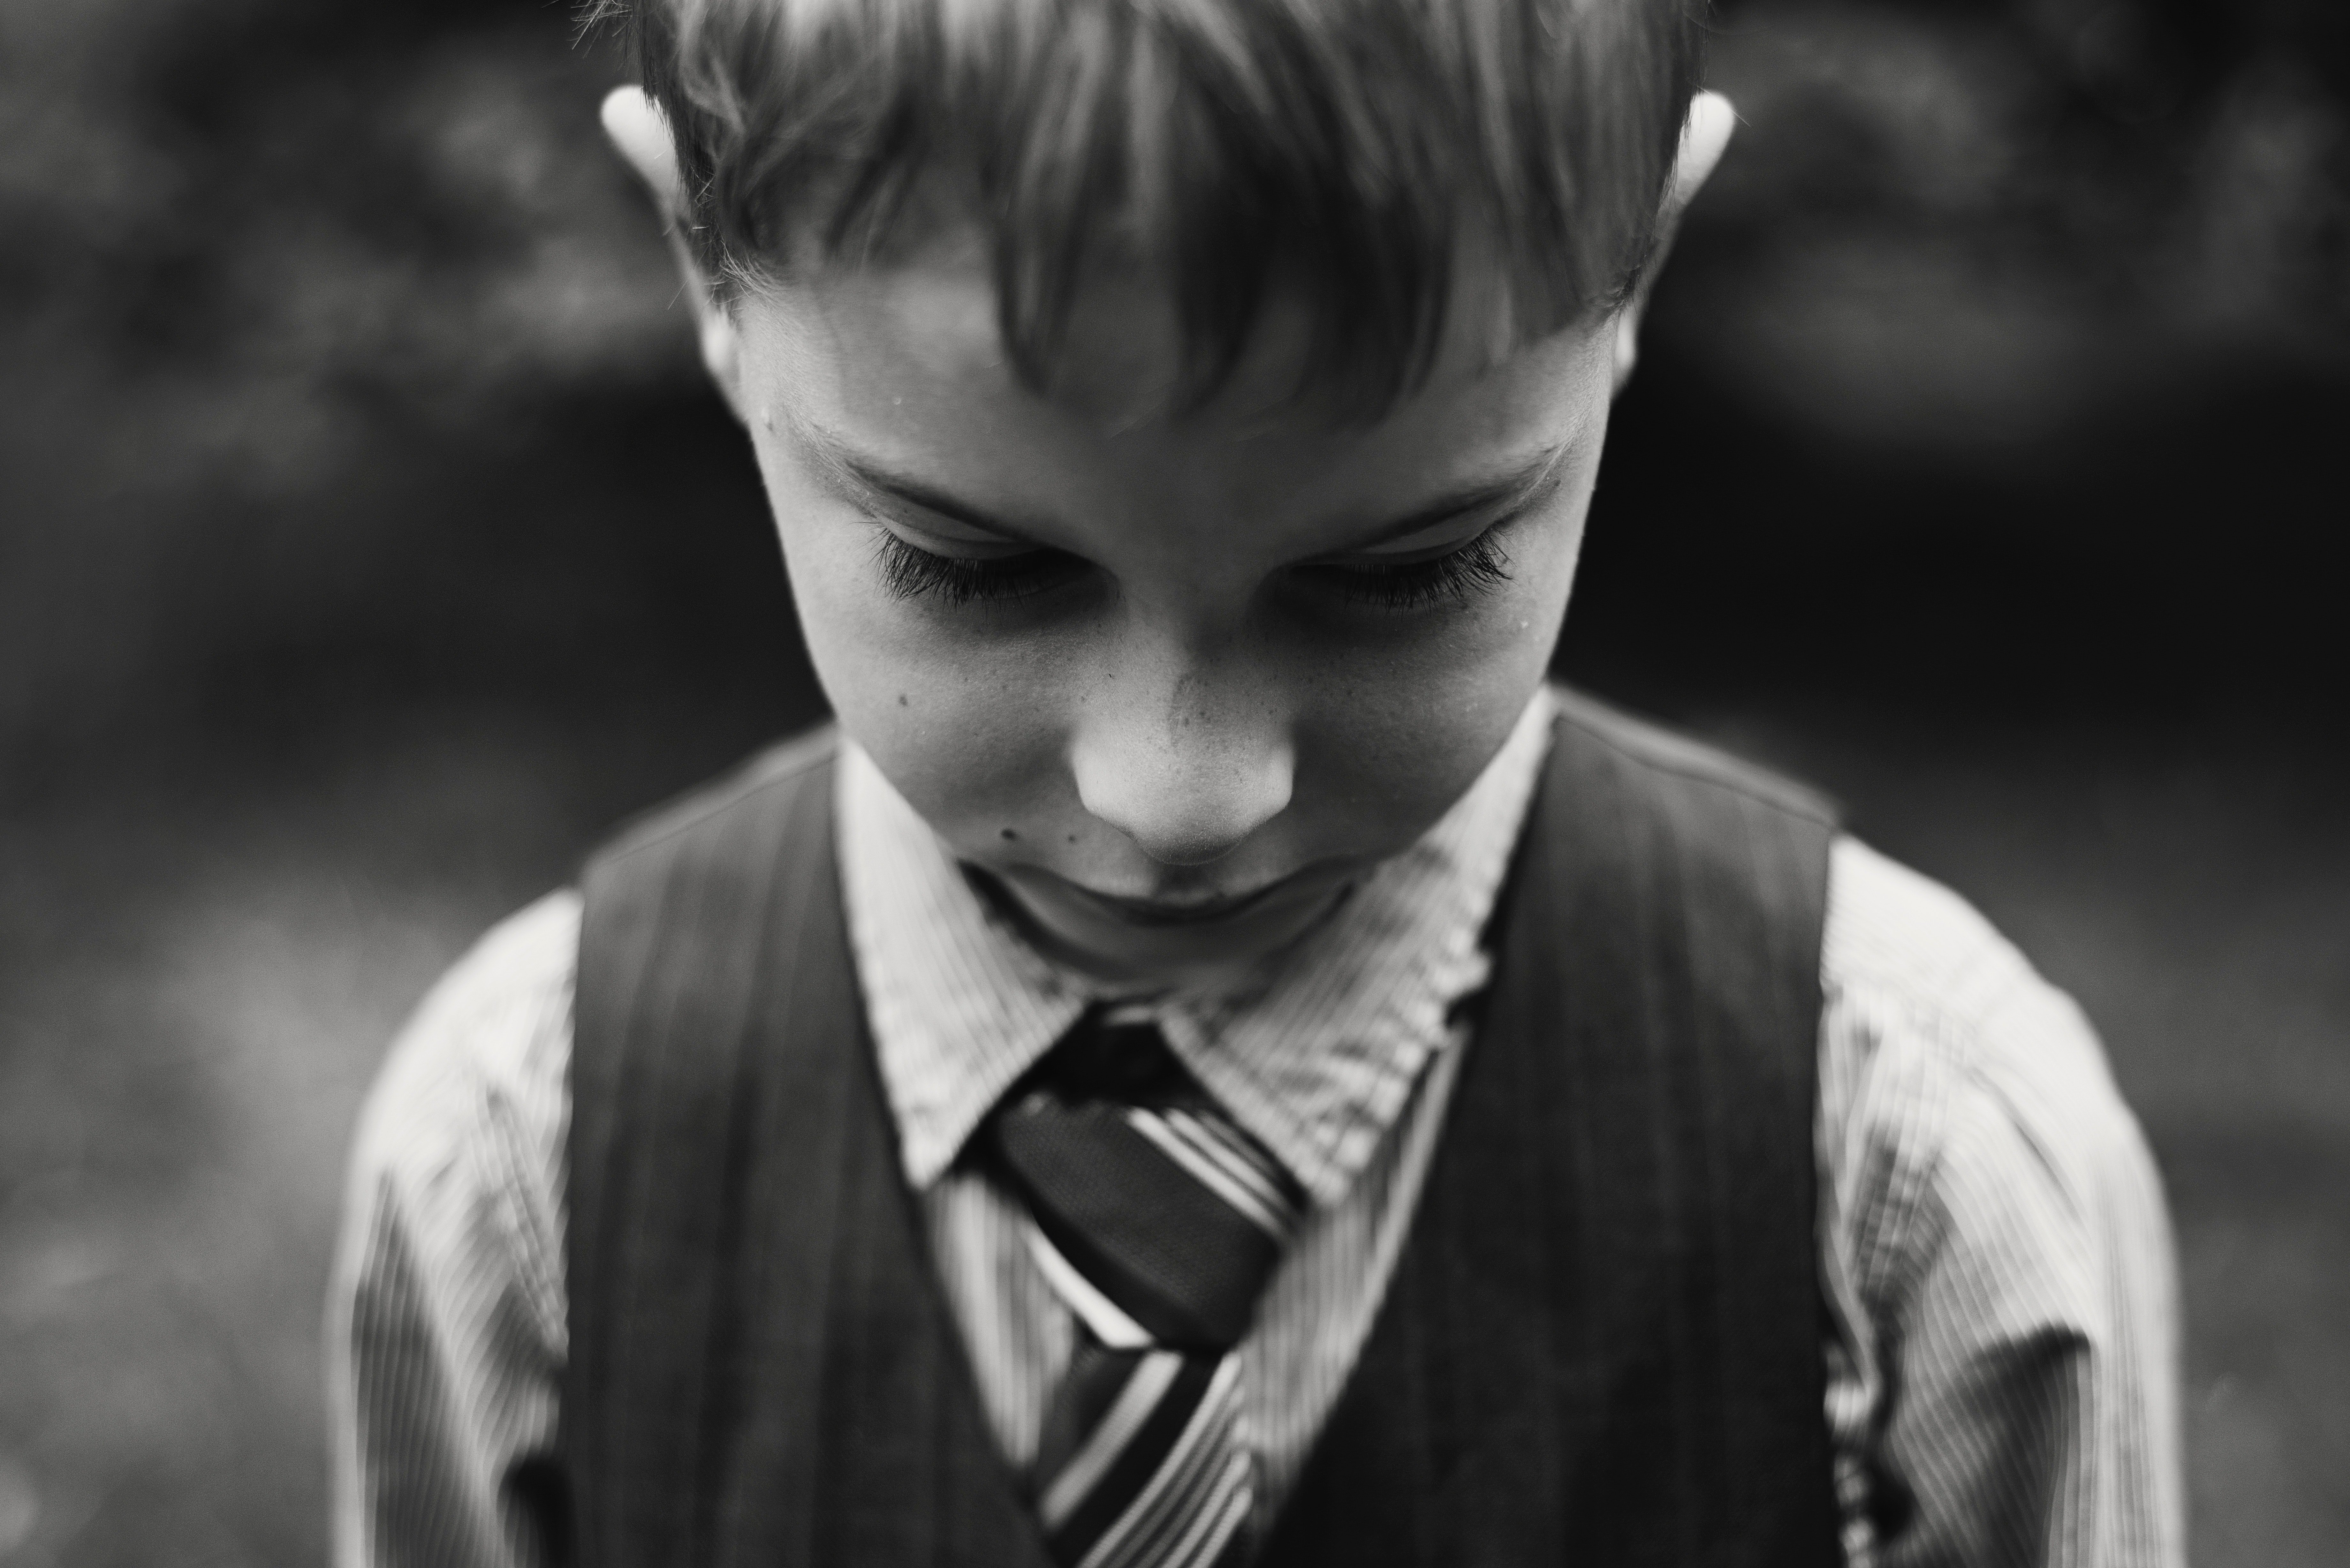 Jovencito con traje y corbata. | Foto: Pexels